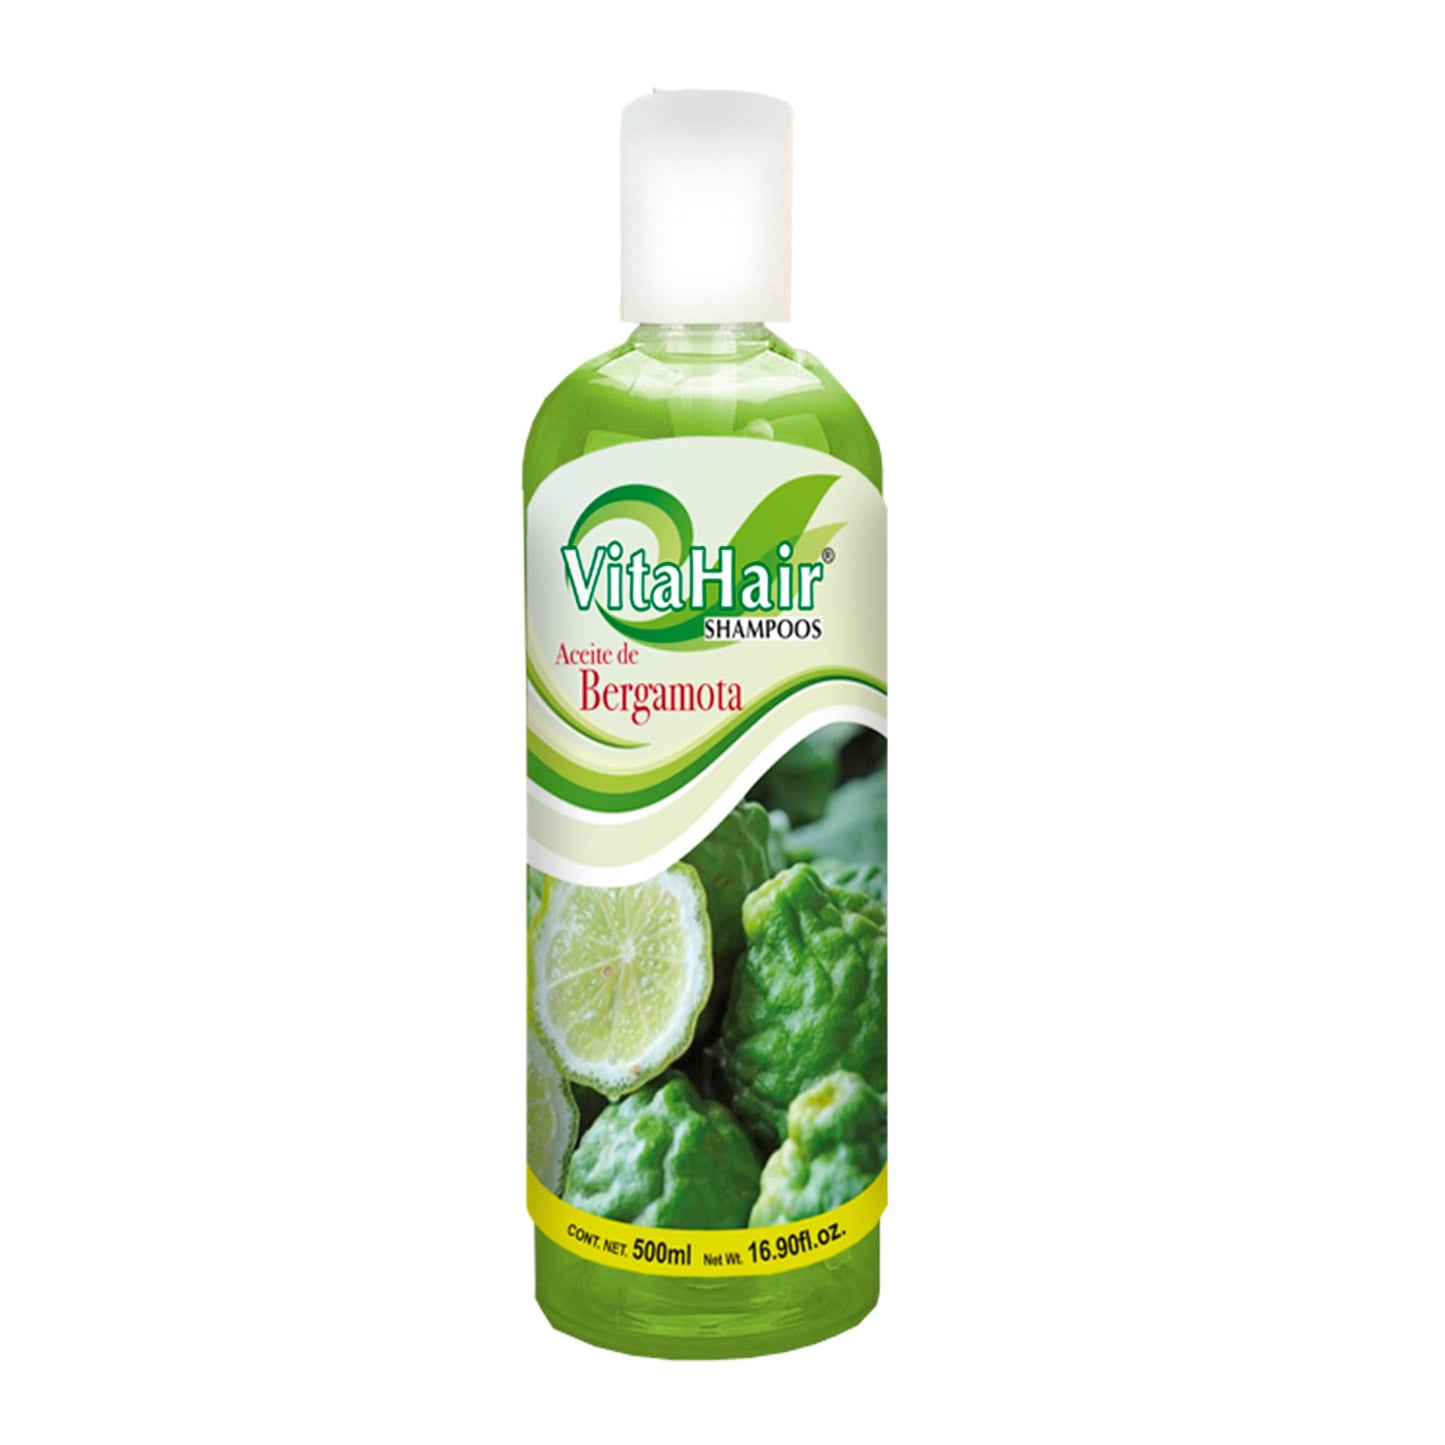 VITAHAIR ® shampoo de bergamota 500ml